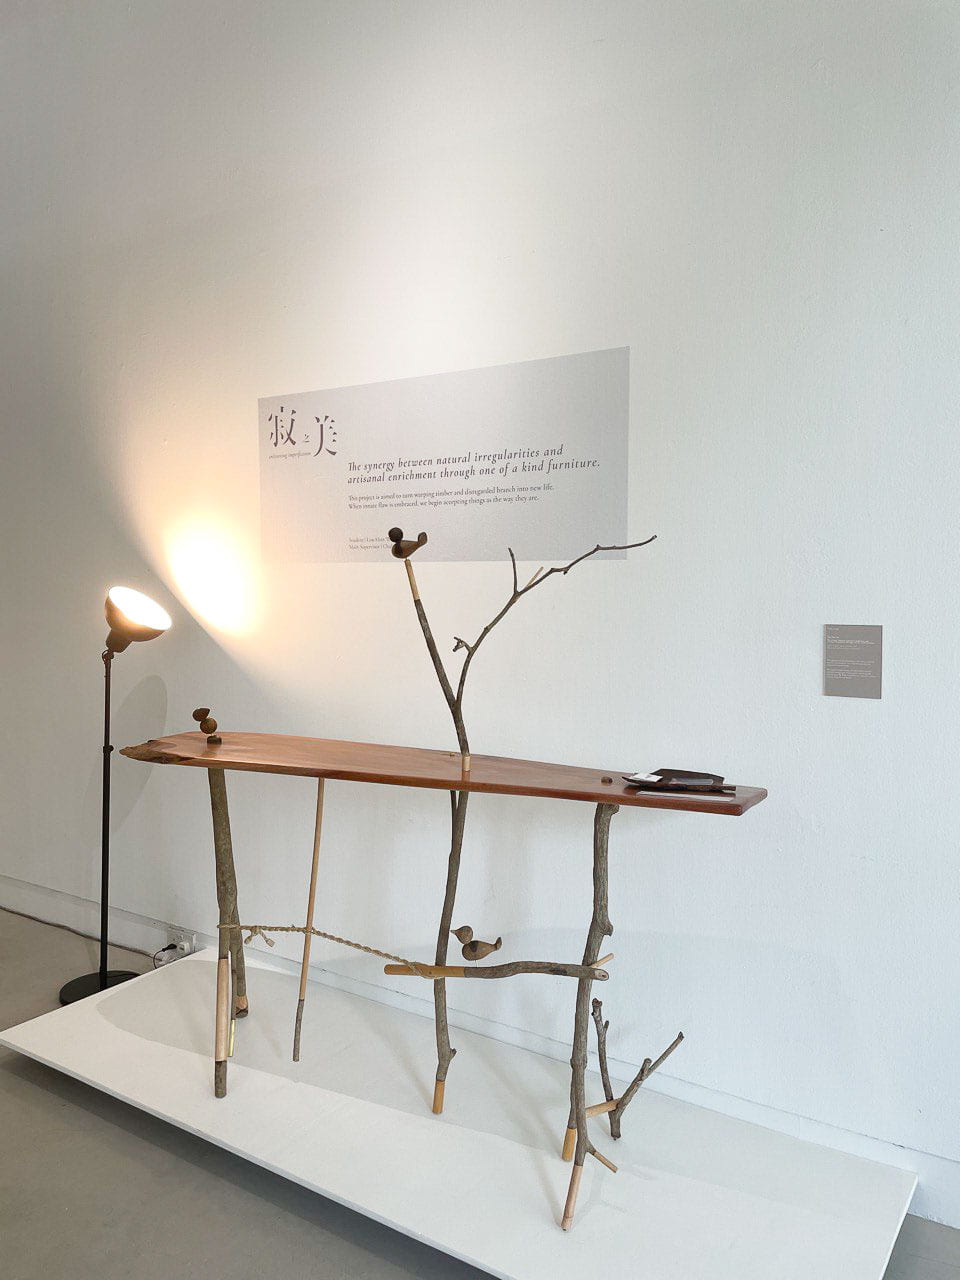 寂之美。The synergy between natural irregularities and artisanal enrichment through one of a kind furniture. at NTU ADM Portfolio